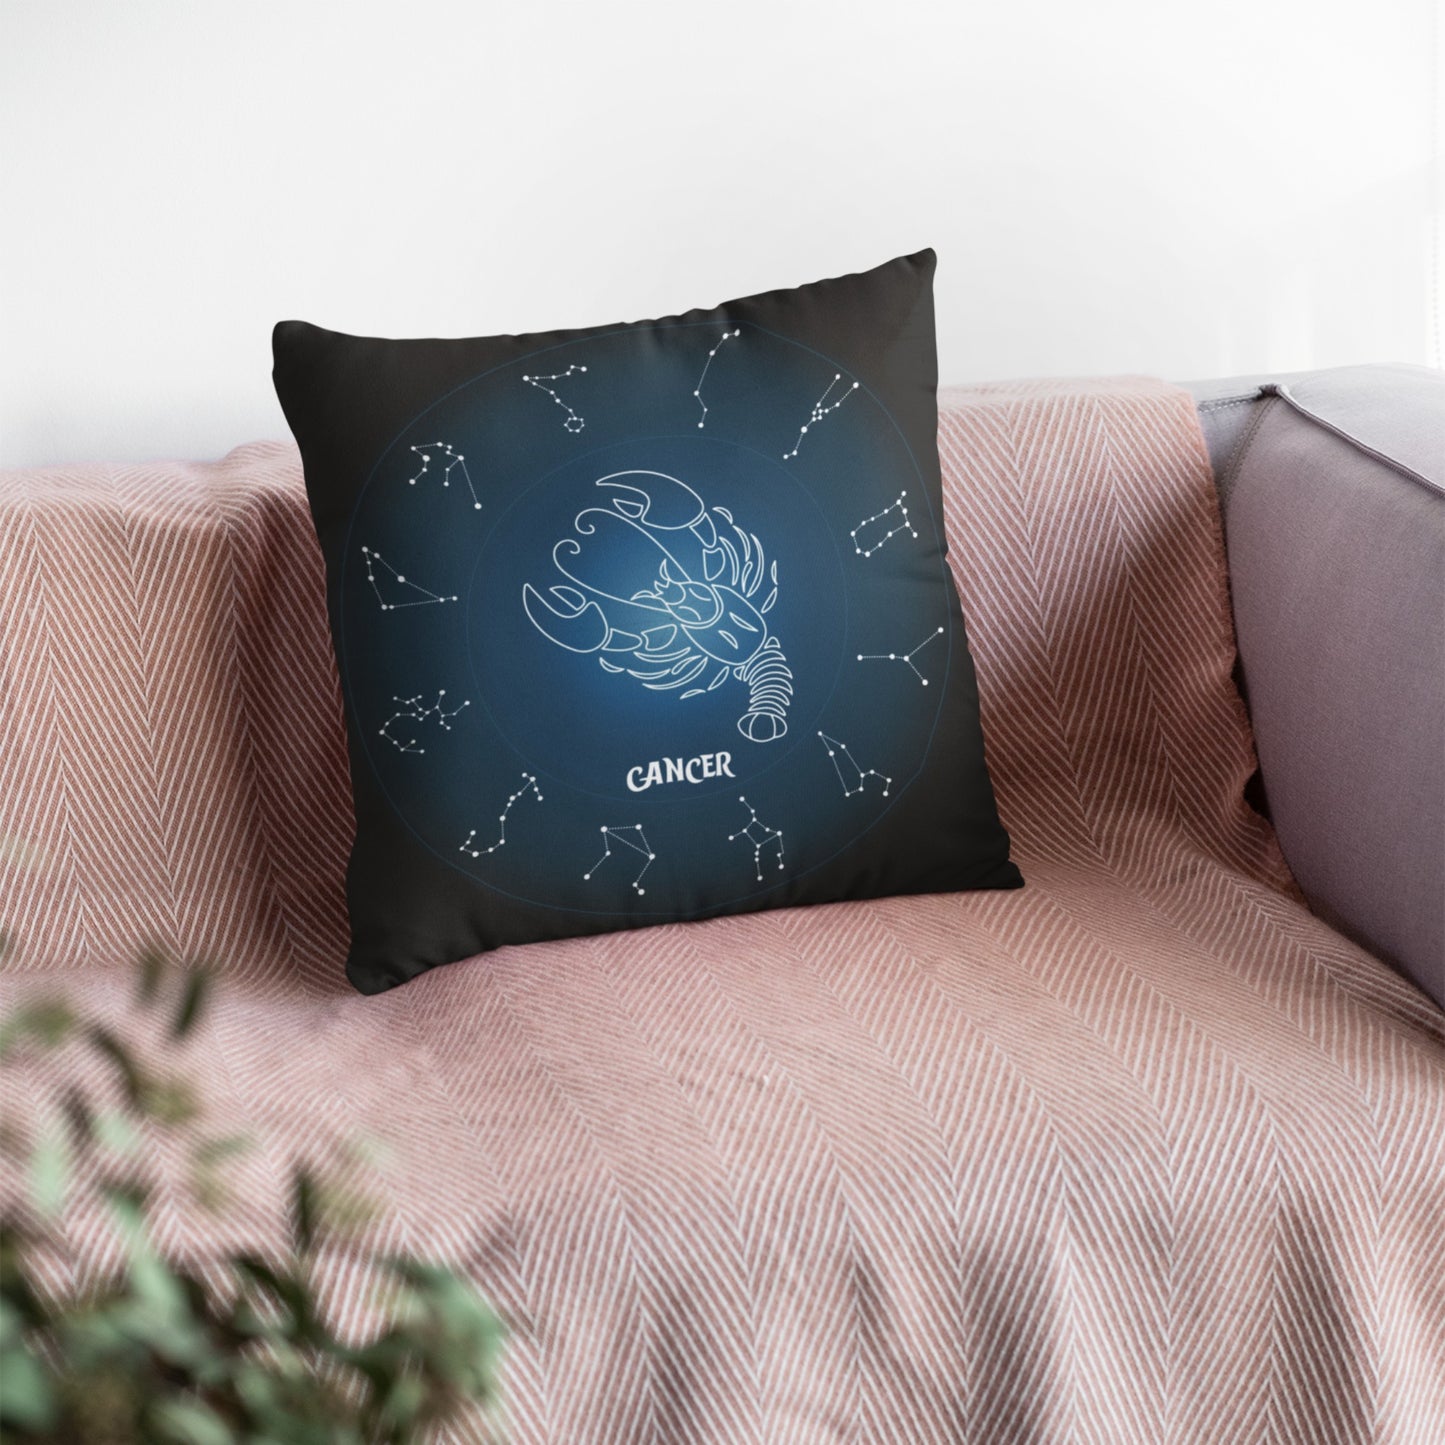 Zodiac-inspired Cancer Decorative Cushion